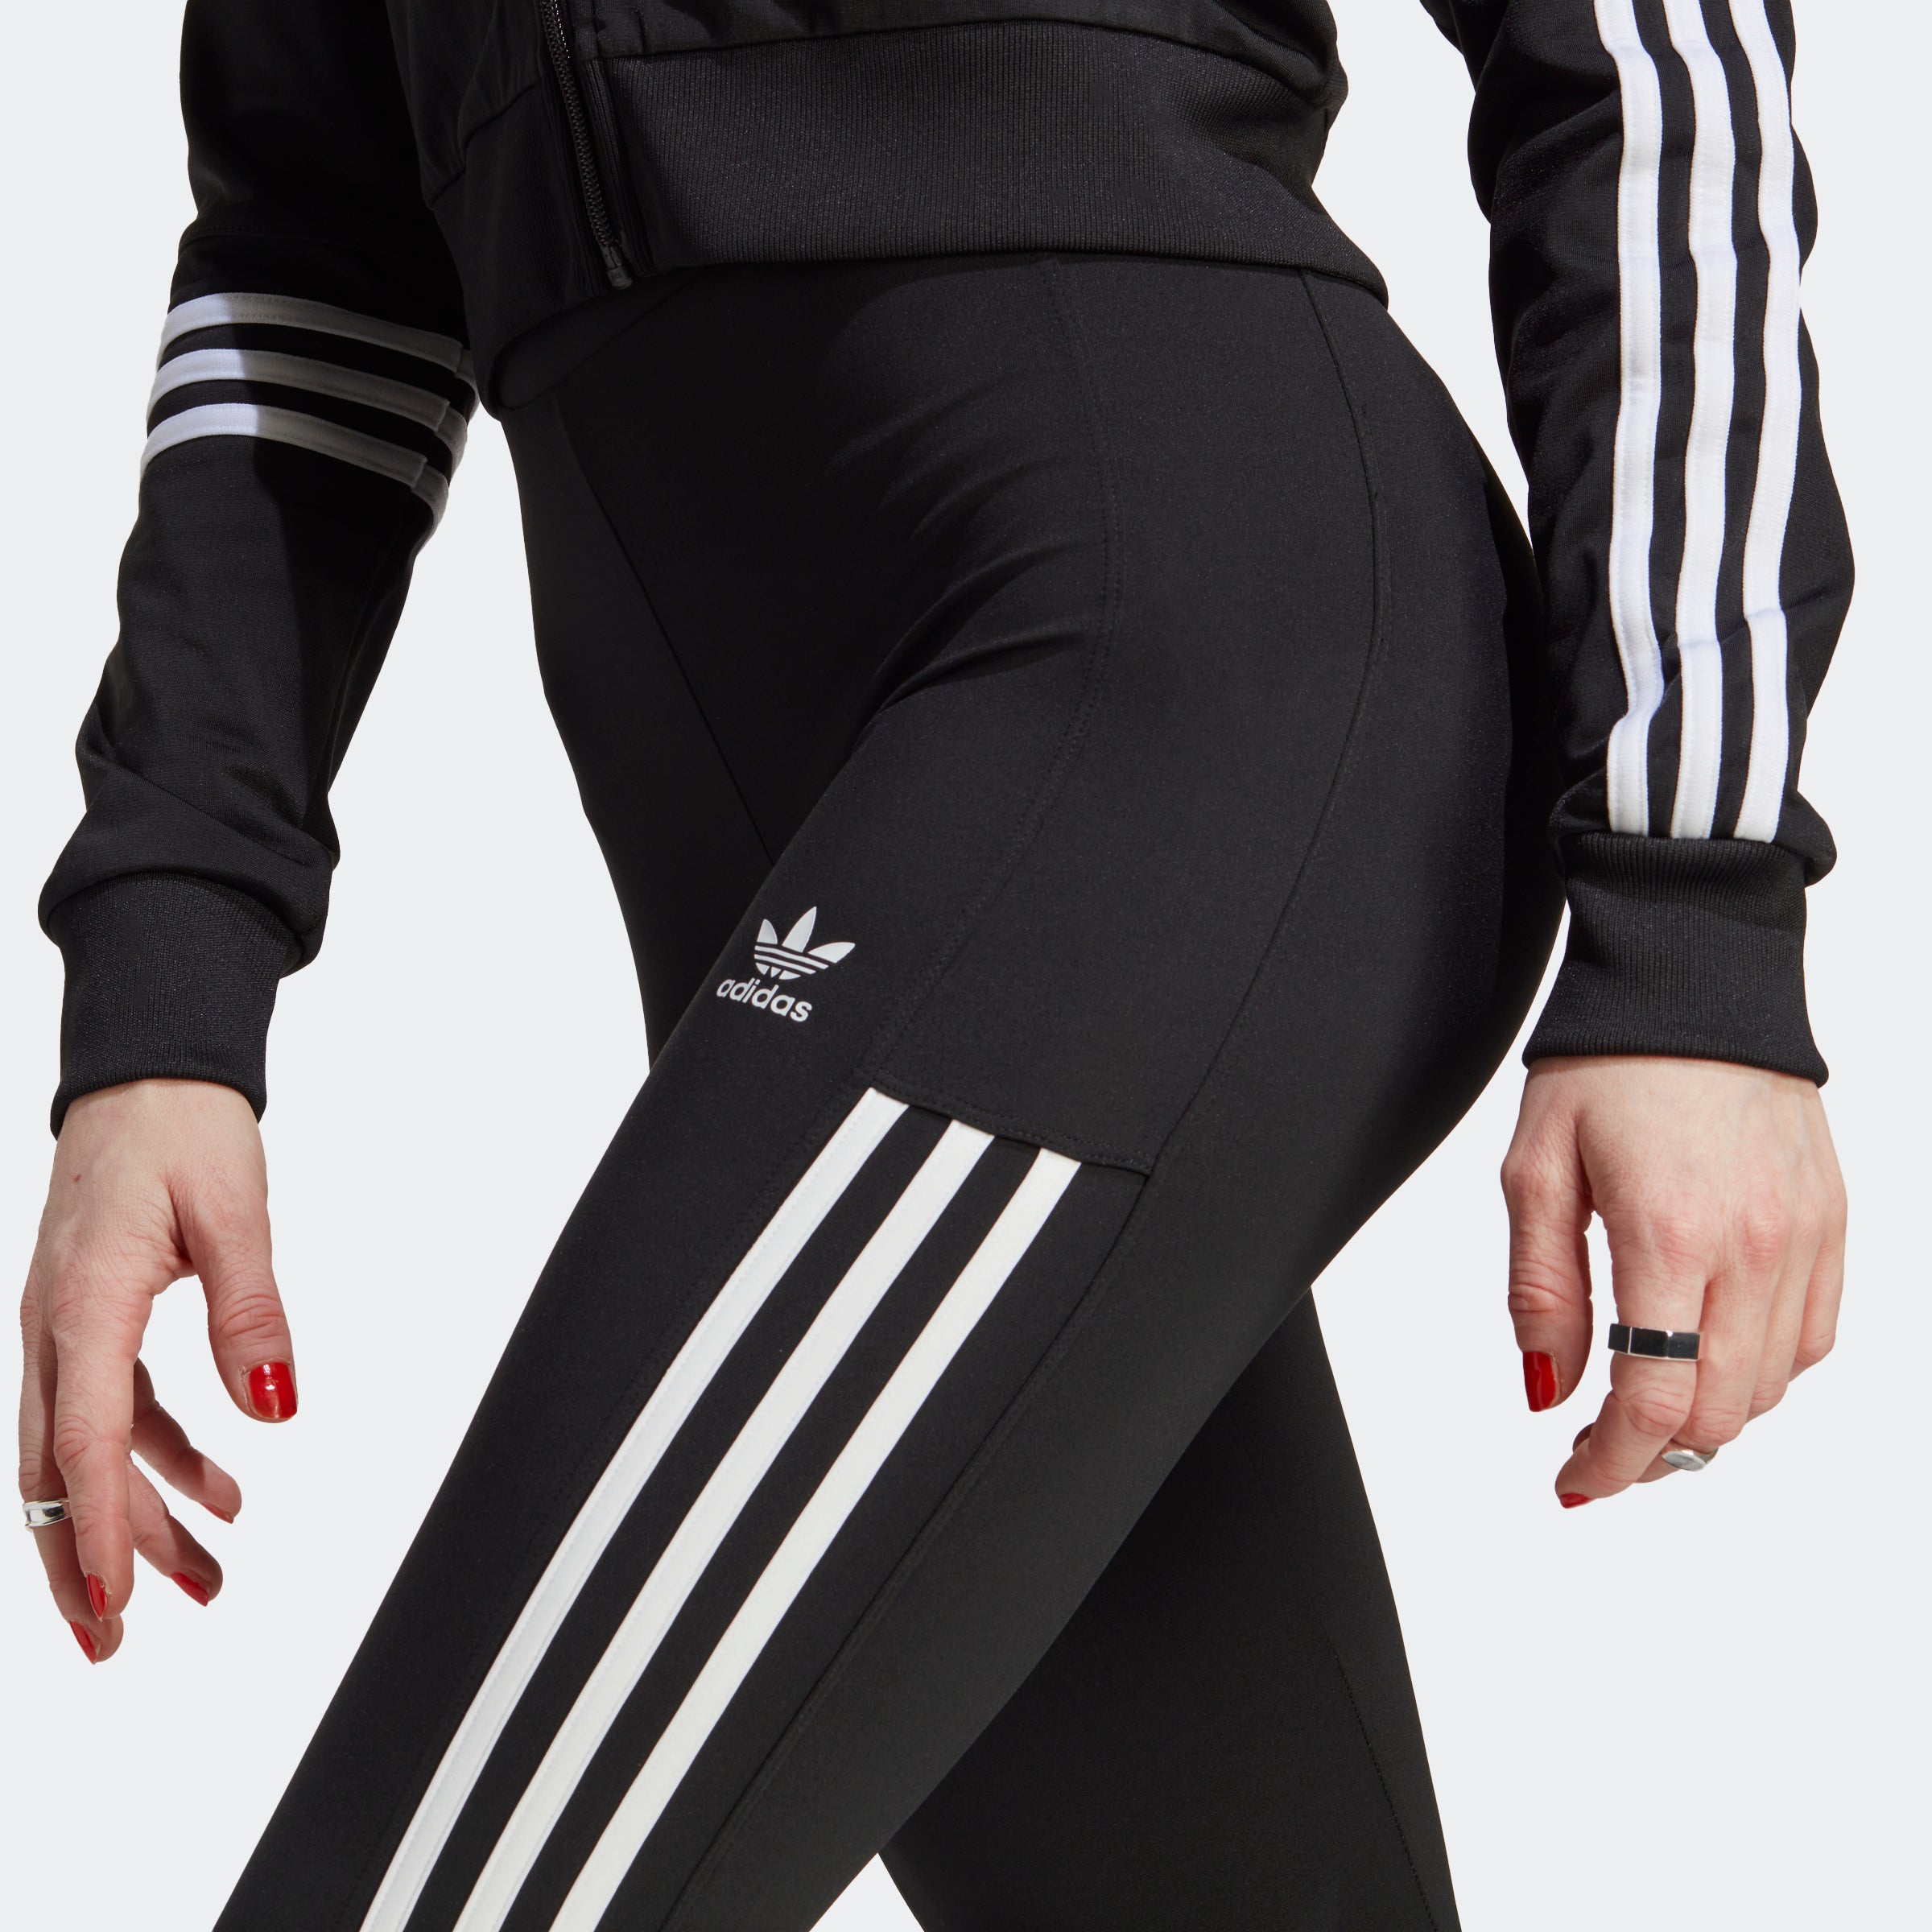 Buy Adidas 3 Stripes Elastic Waist Active Leggings In Black